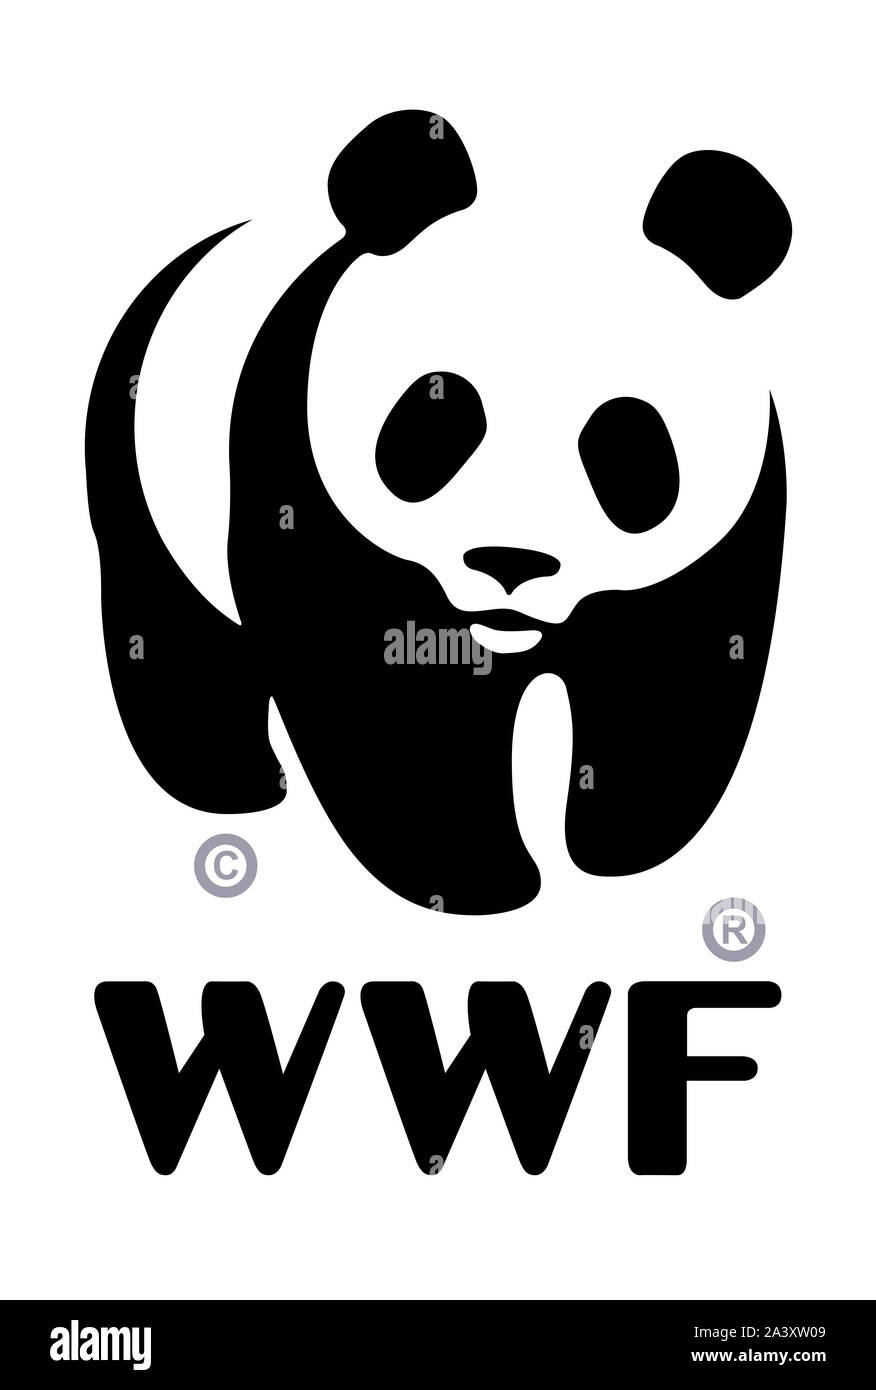 World Wildlife Fund (WWF) logo Stock Photo - Alamy